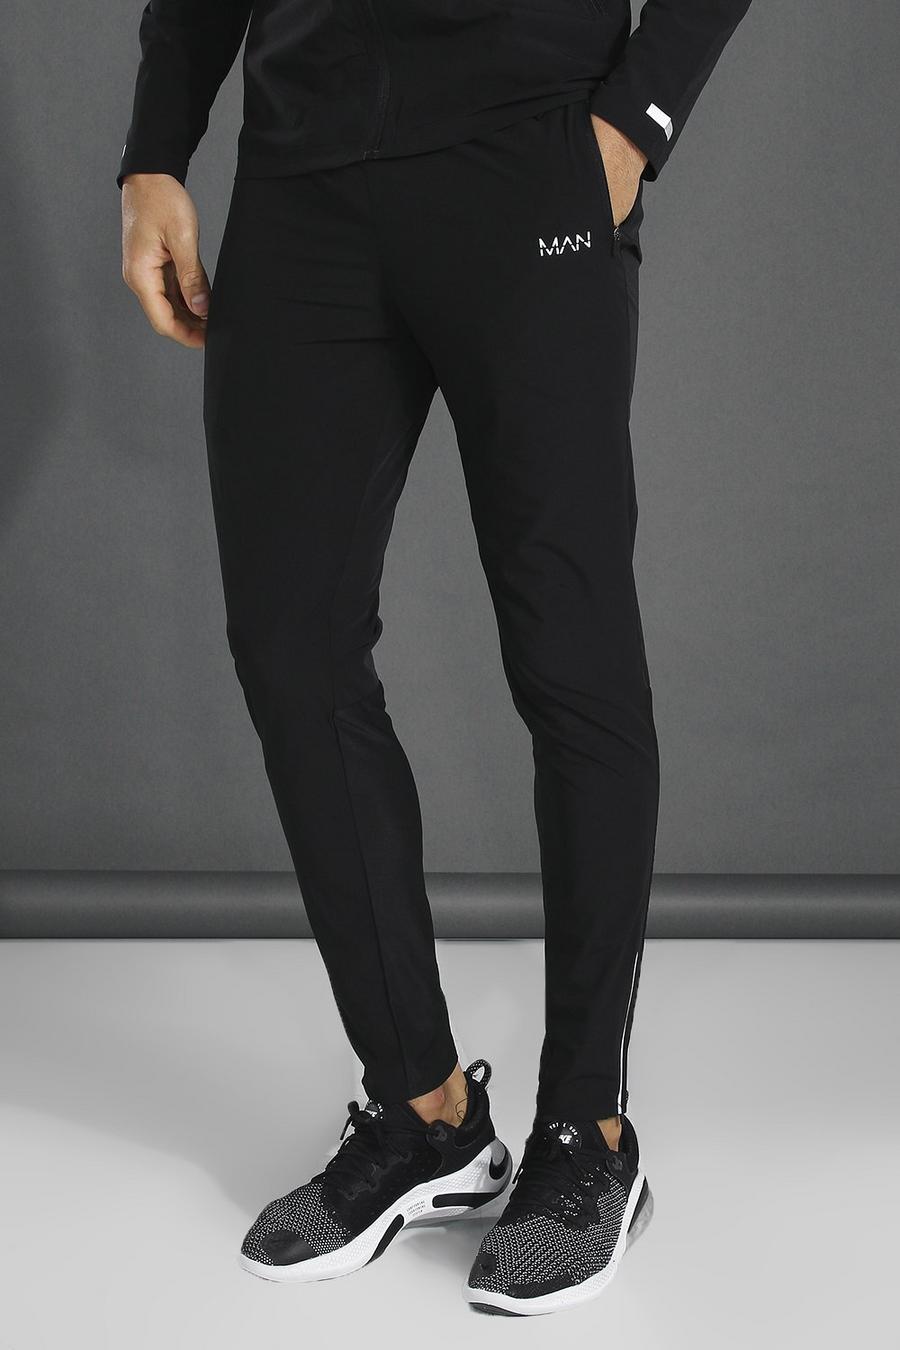 שחור negro מכנסי טרנינג ספורטיביים קלילים חלקים עם כיתוב Man